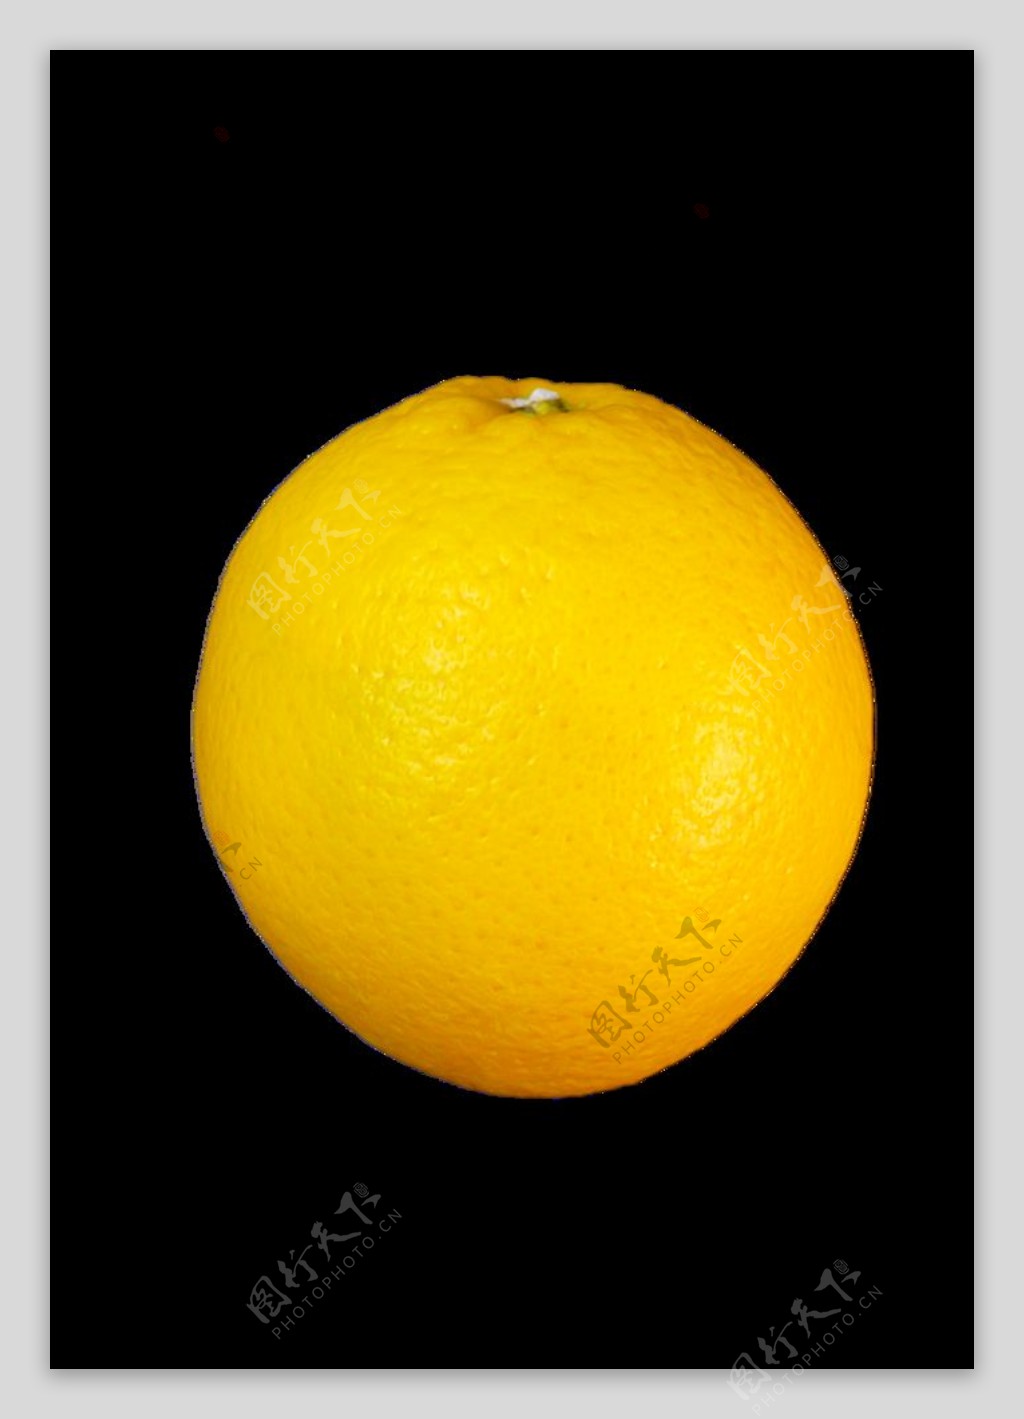 免抠橙子